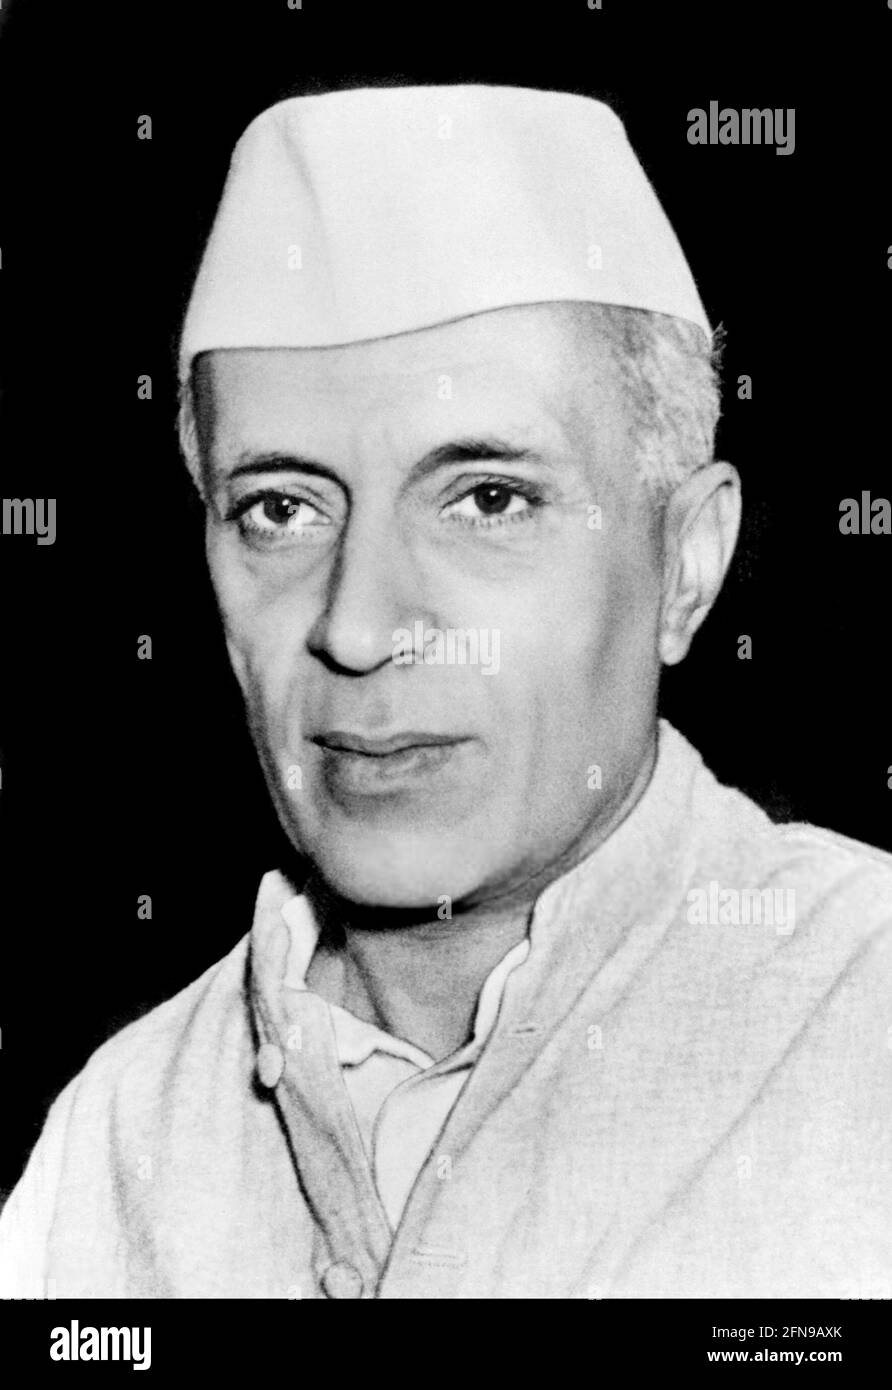 Jawaharlal Nehru. Portrait du premier Premier ministre de l'Inde, Jawaharlal Nehru (1889-1964) en 1947 Banque D'Images